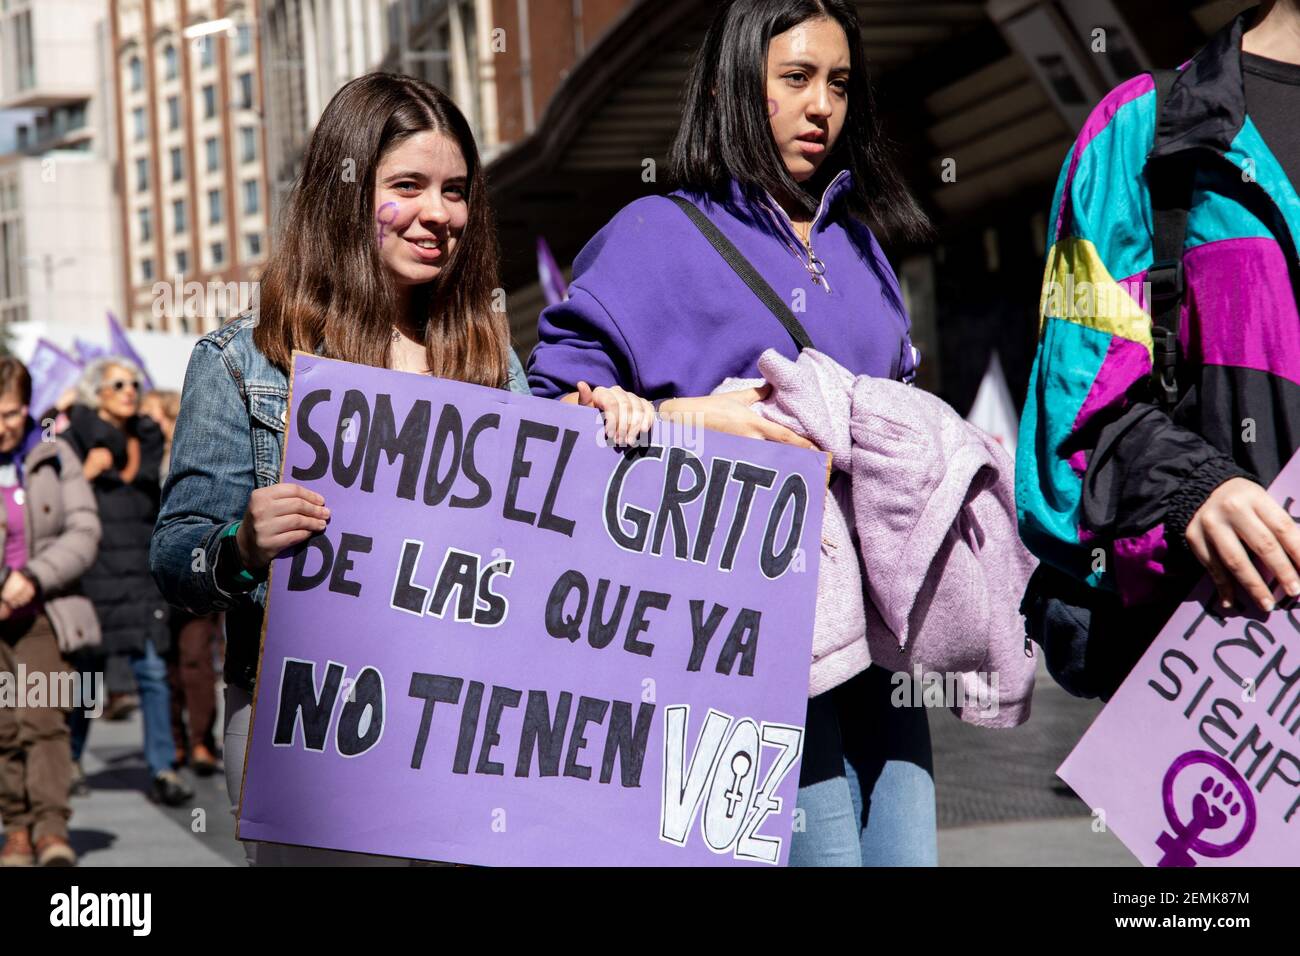 Una mujer vista con un cartel diciendo, somos el grito de aquellos que ya  no tienen voz, durante una protesta. España celebra el día Internacional de  la Mujer con una huelga general